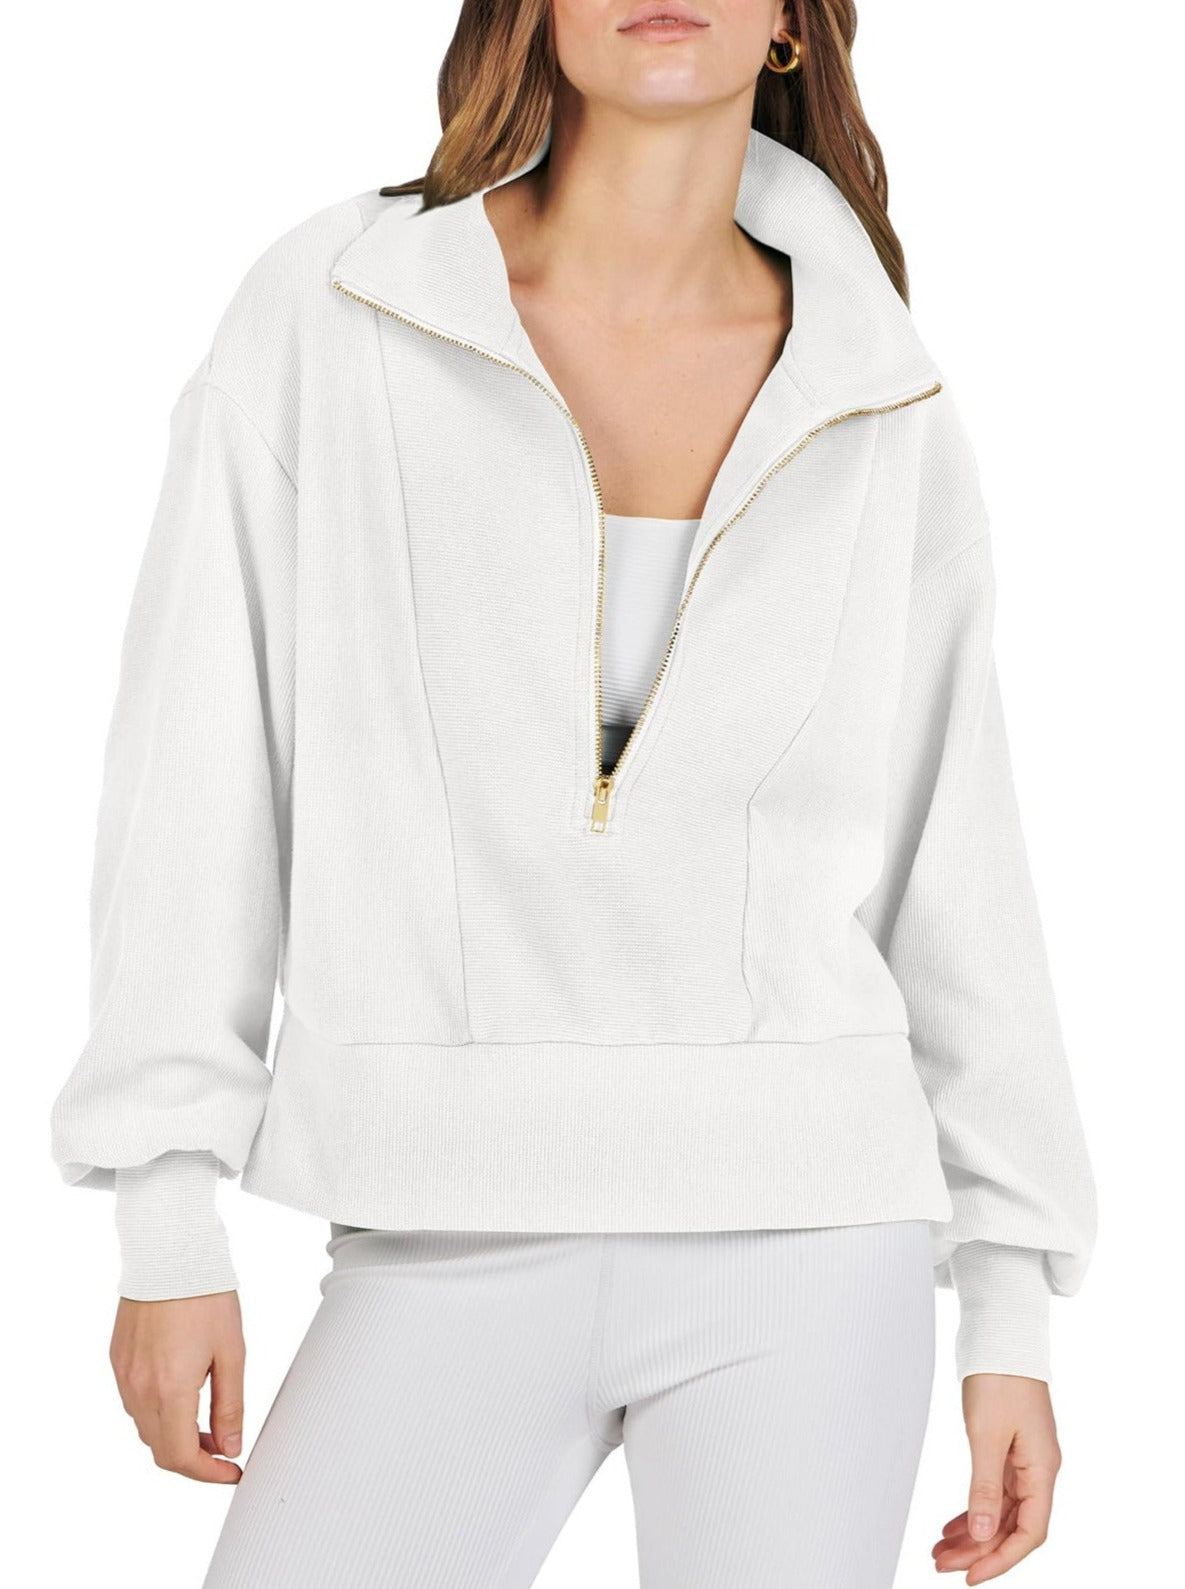 NTG Fad TOP white / S Half Zip Pullover Long Sleeve Sweatshirt